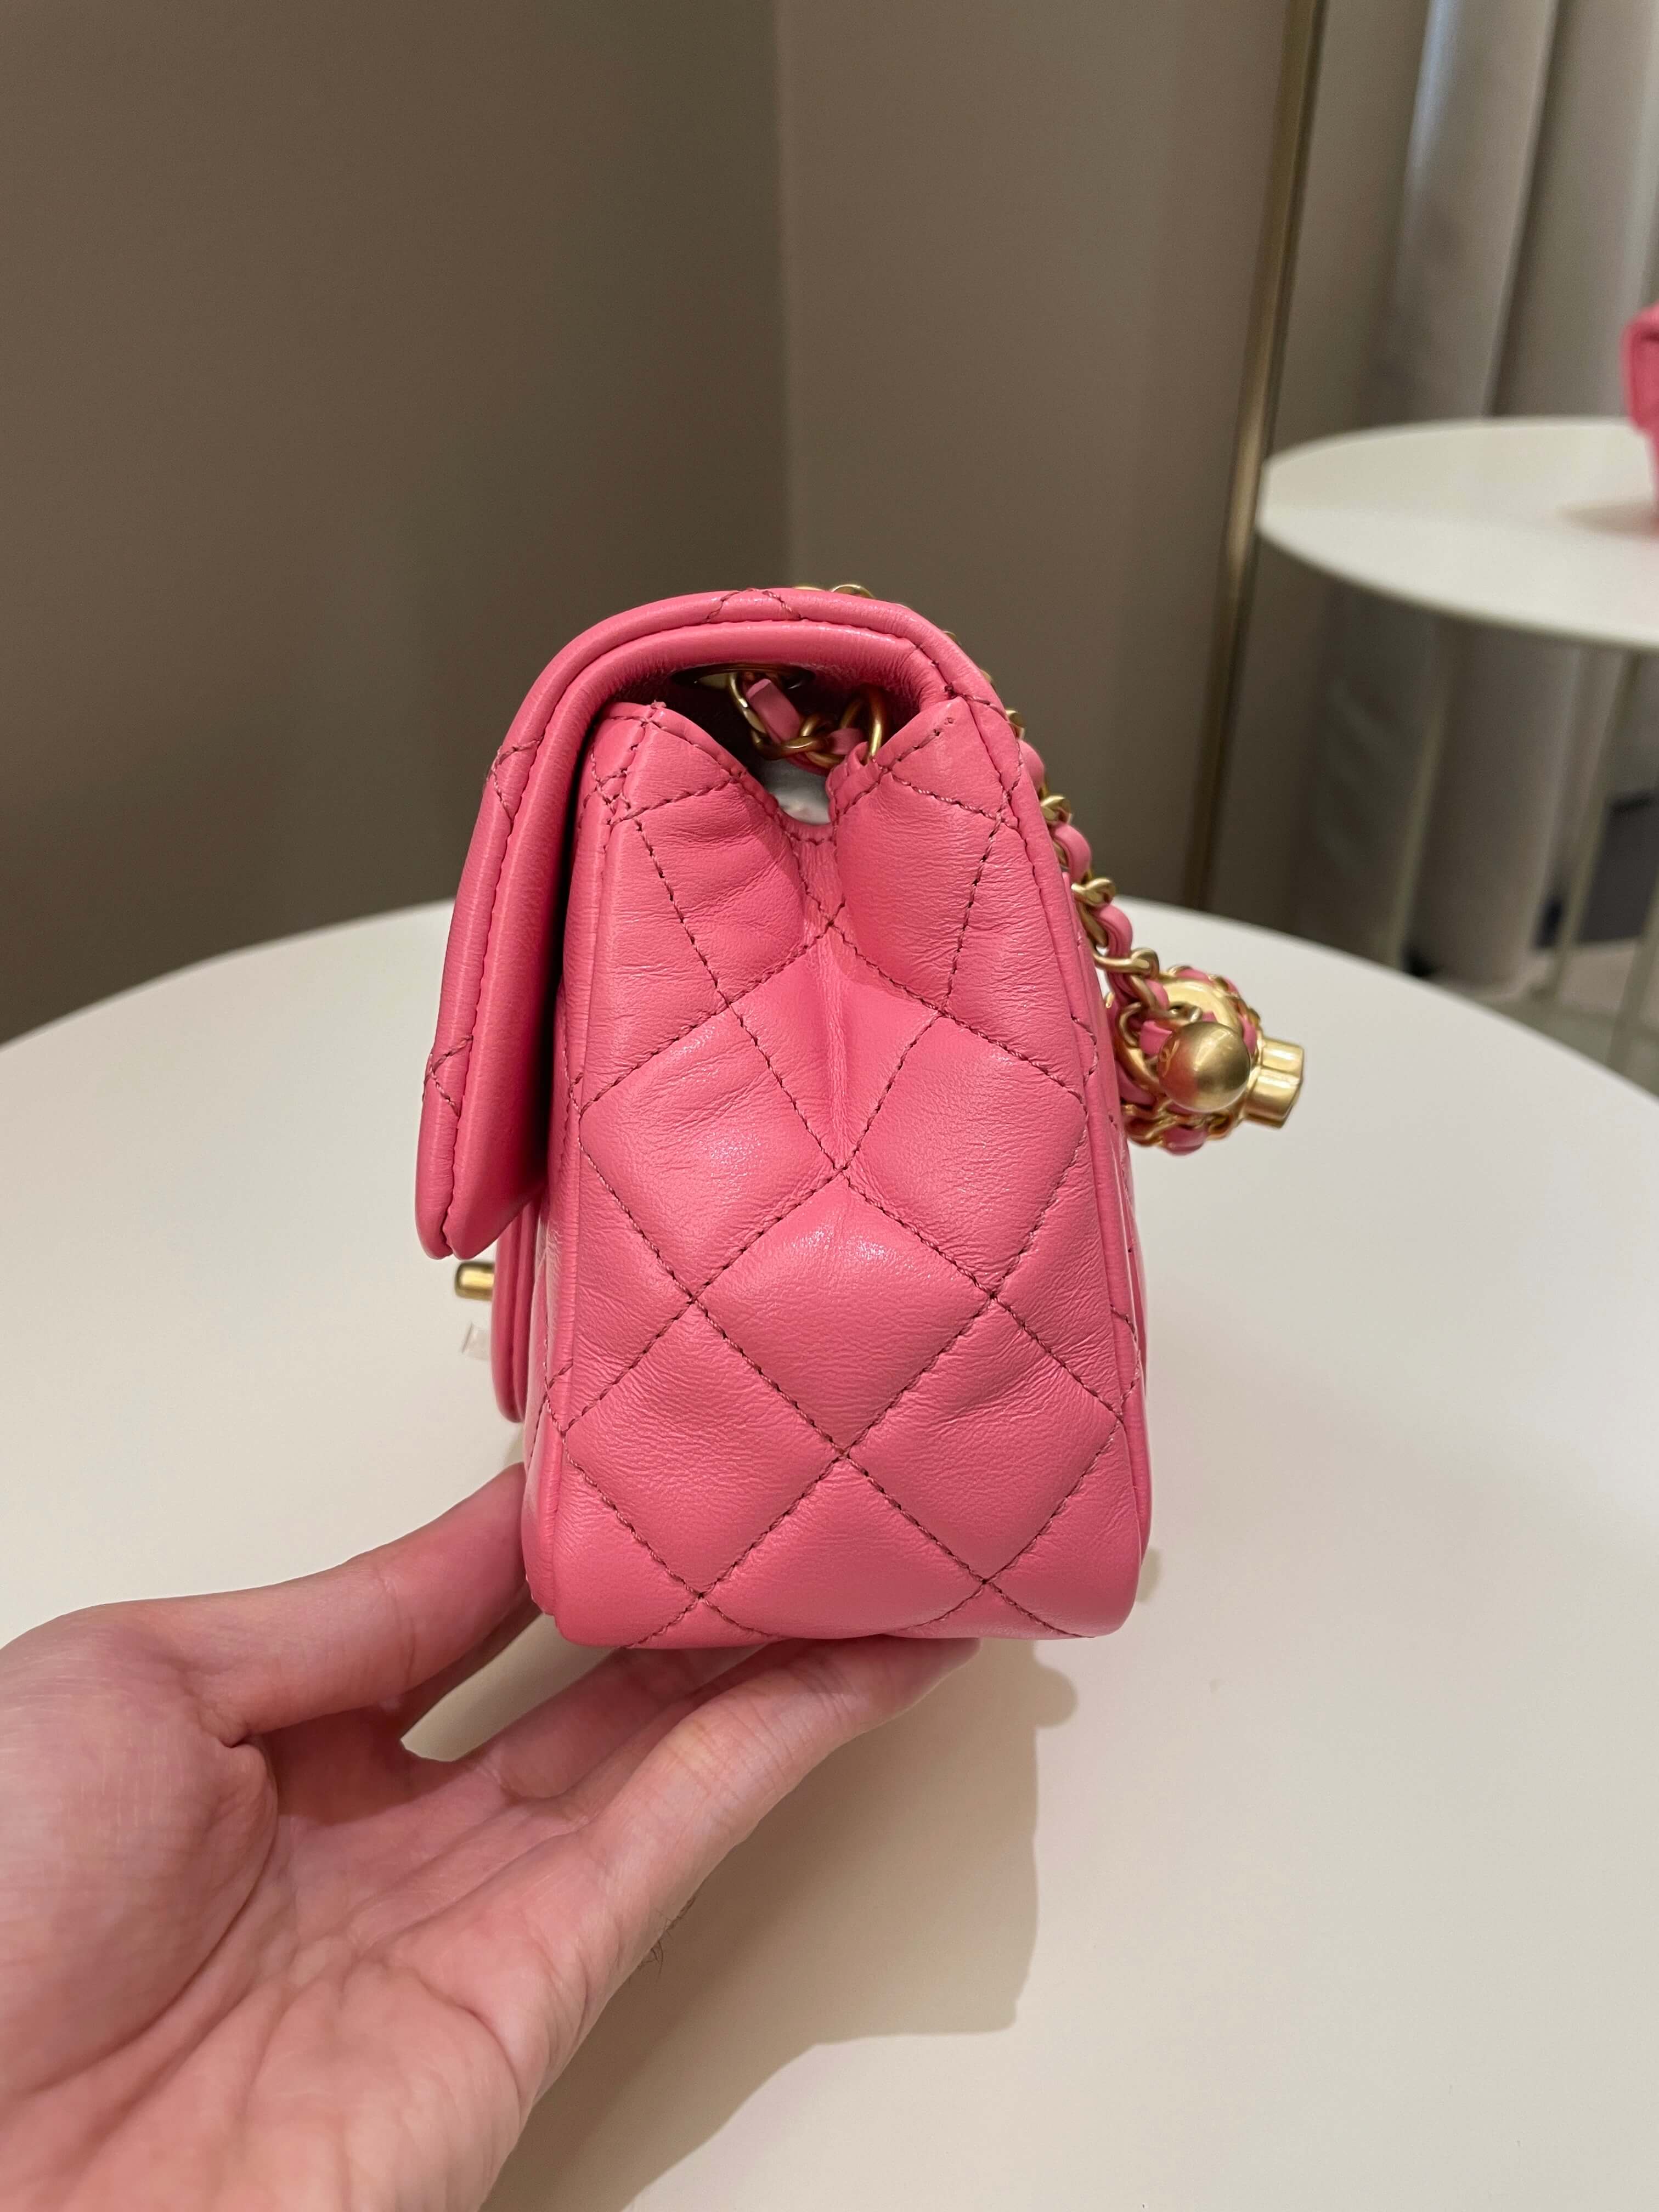 chanel purse colorful